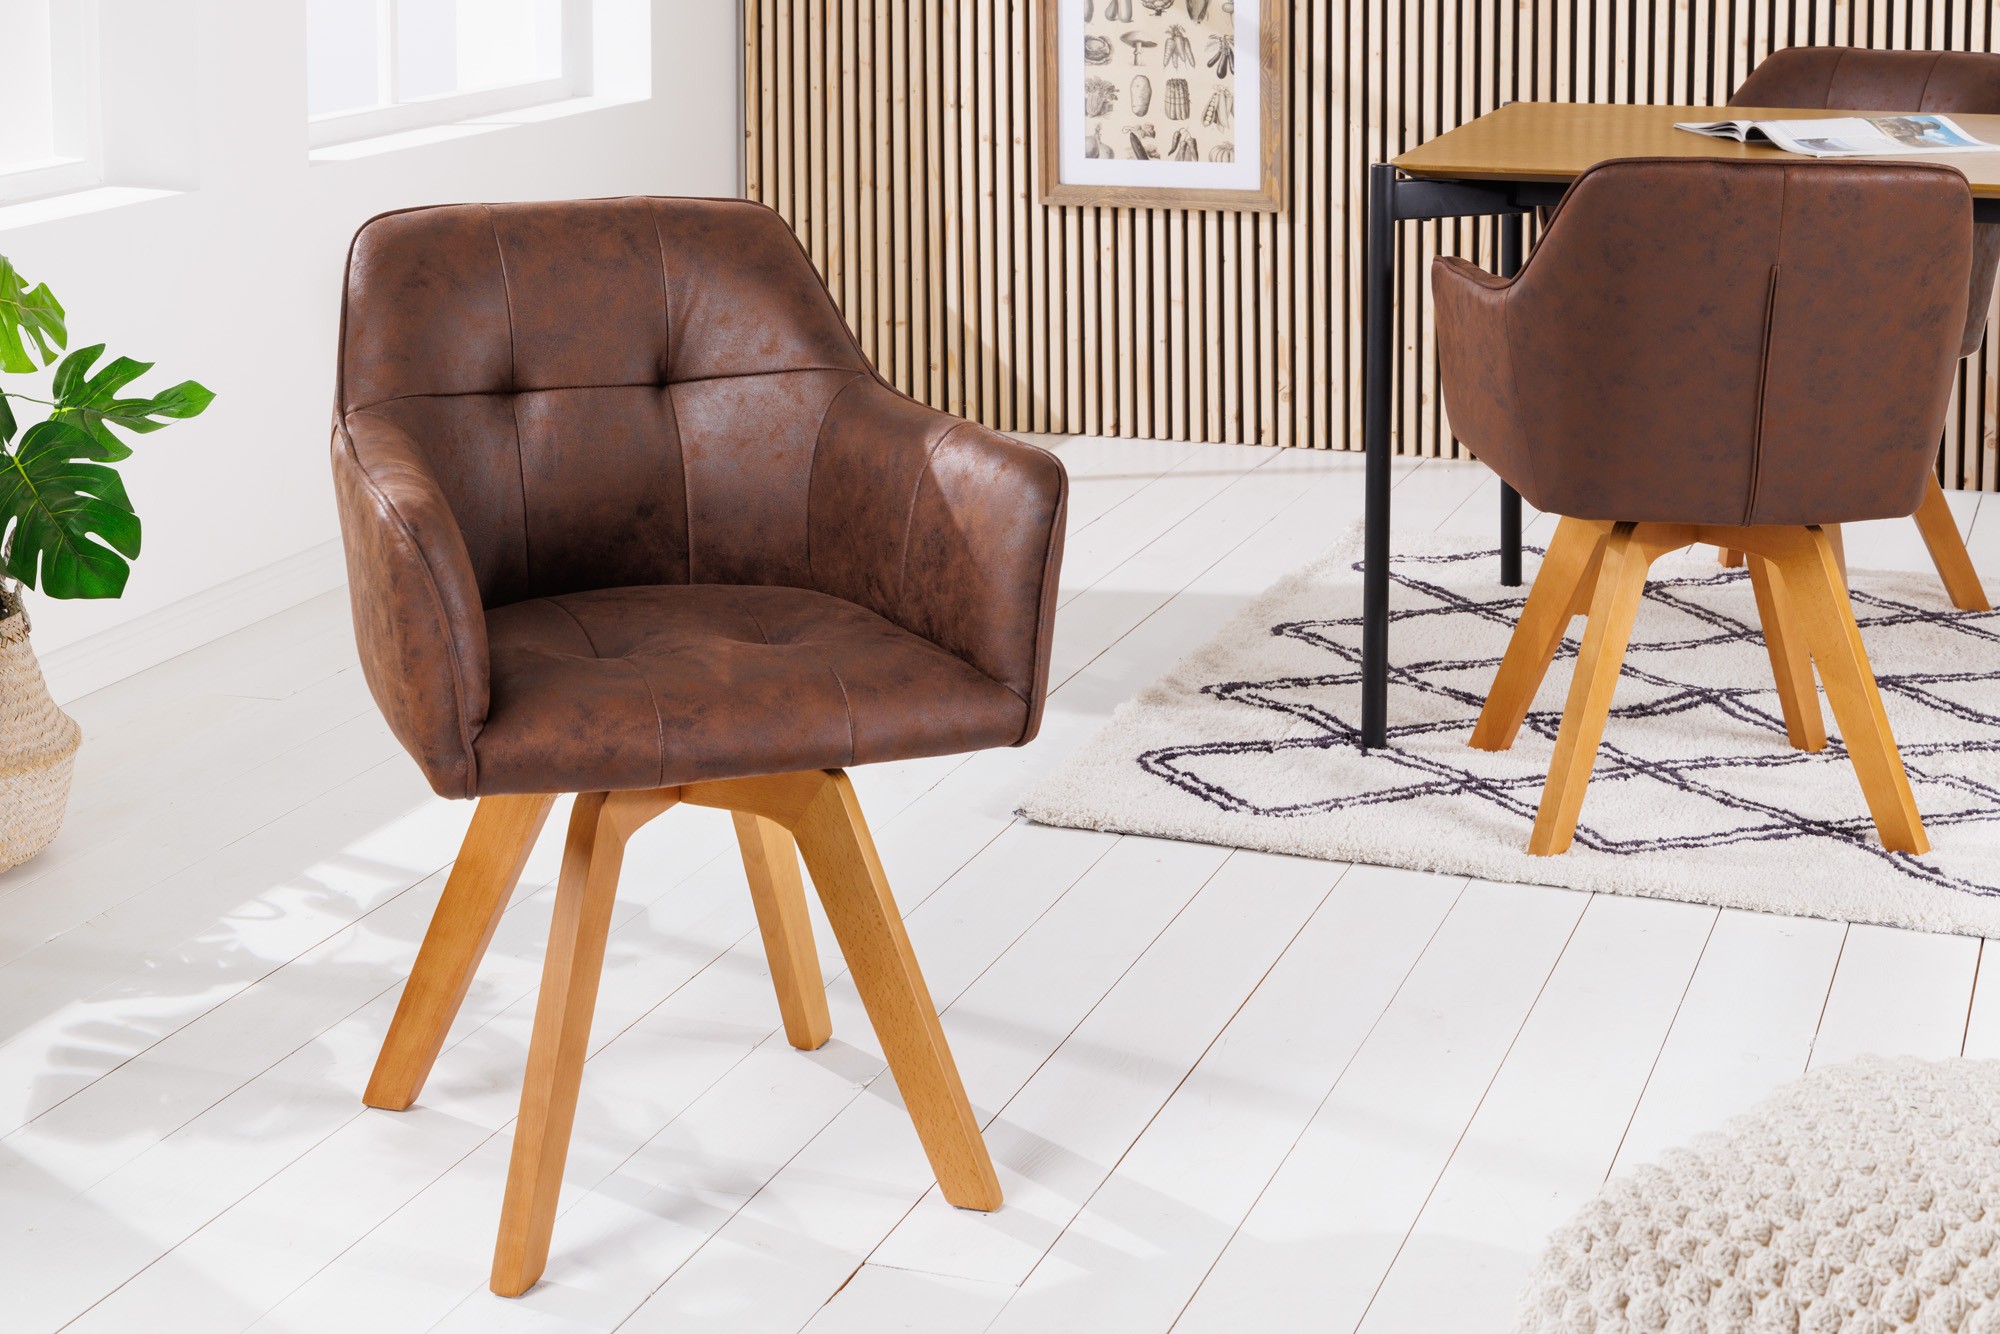 Estila Industriální stylová židle Devon do jídelny s antickým hnědým potahem a masivním hnědýma nohama 83cm